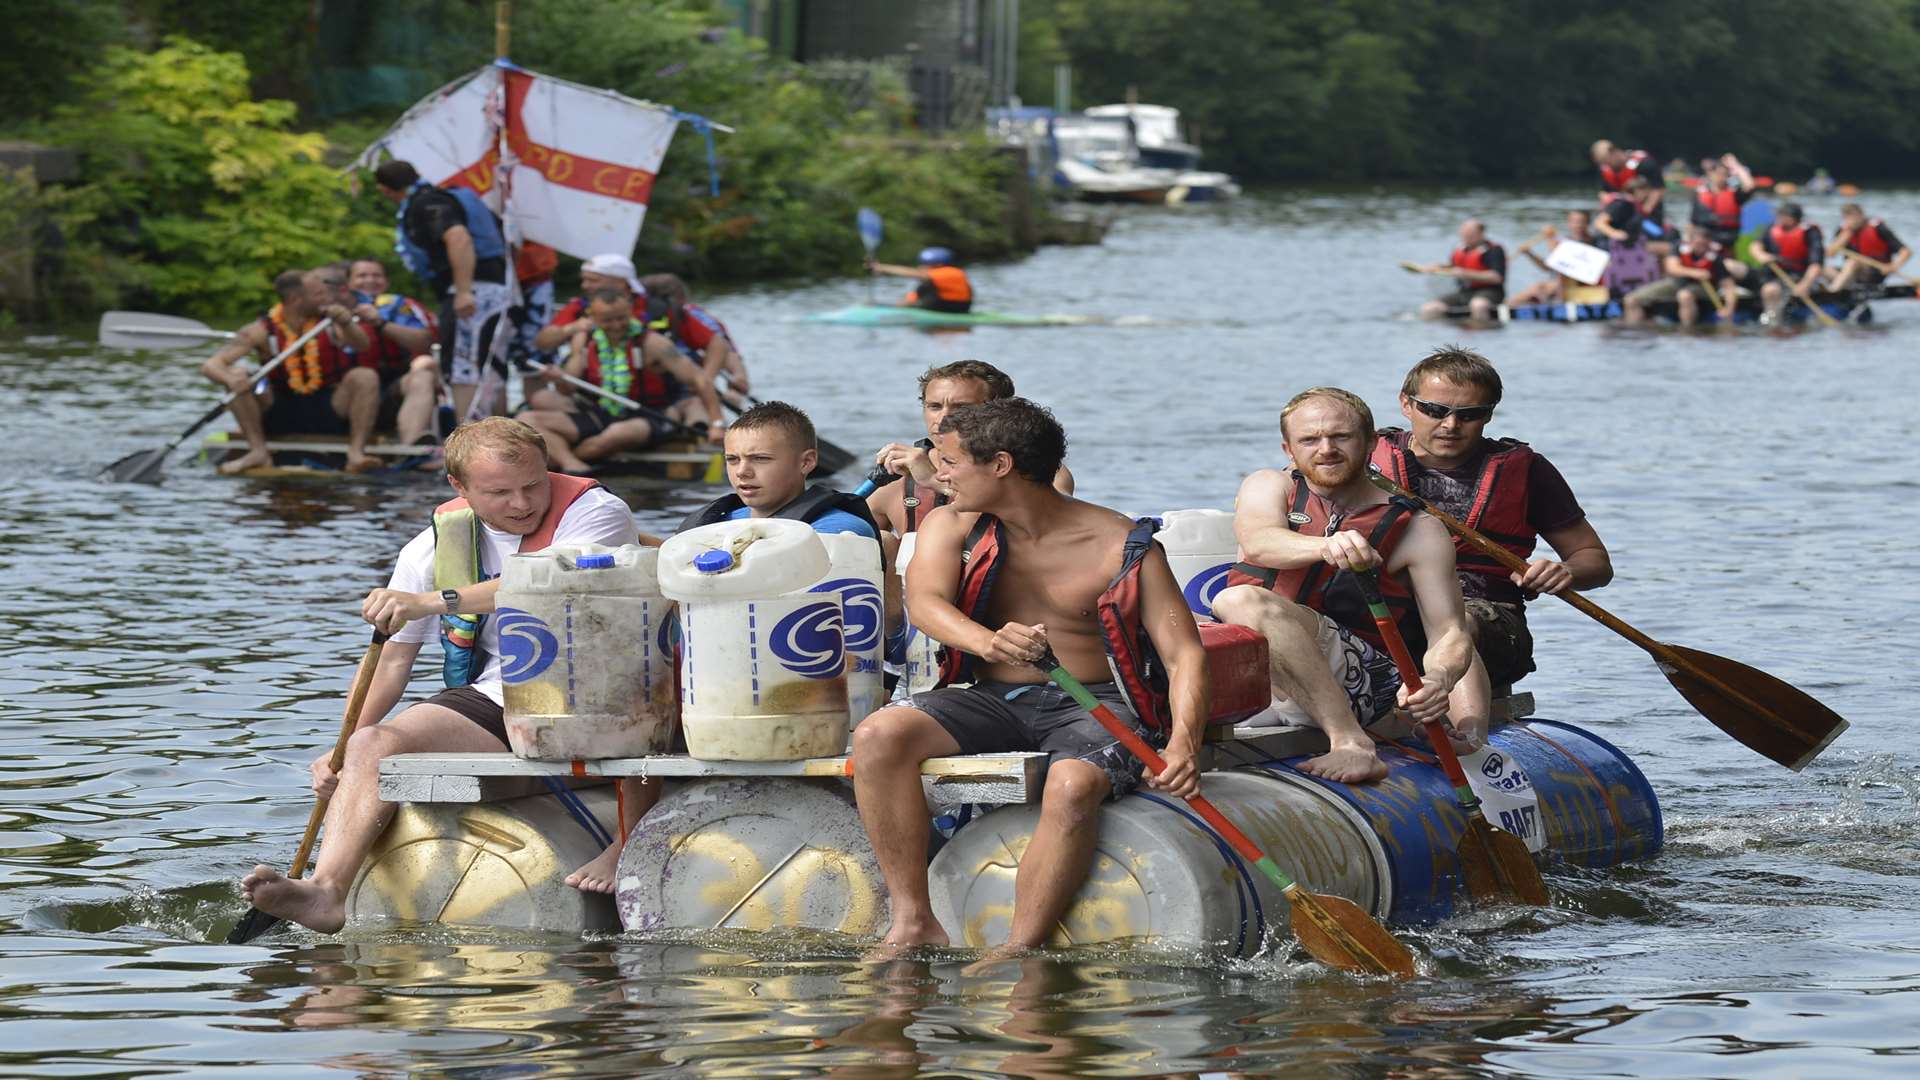 Hundreds enjoyed the Maidstone River Festival in 2013